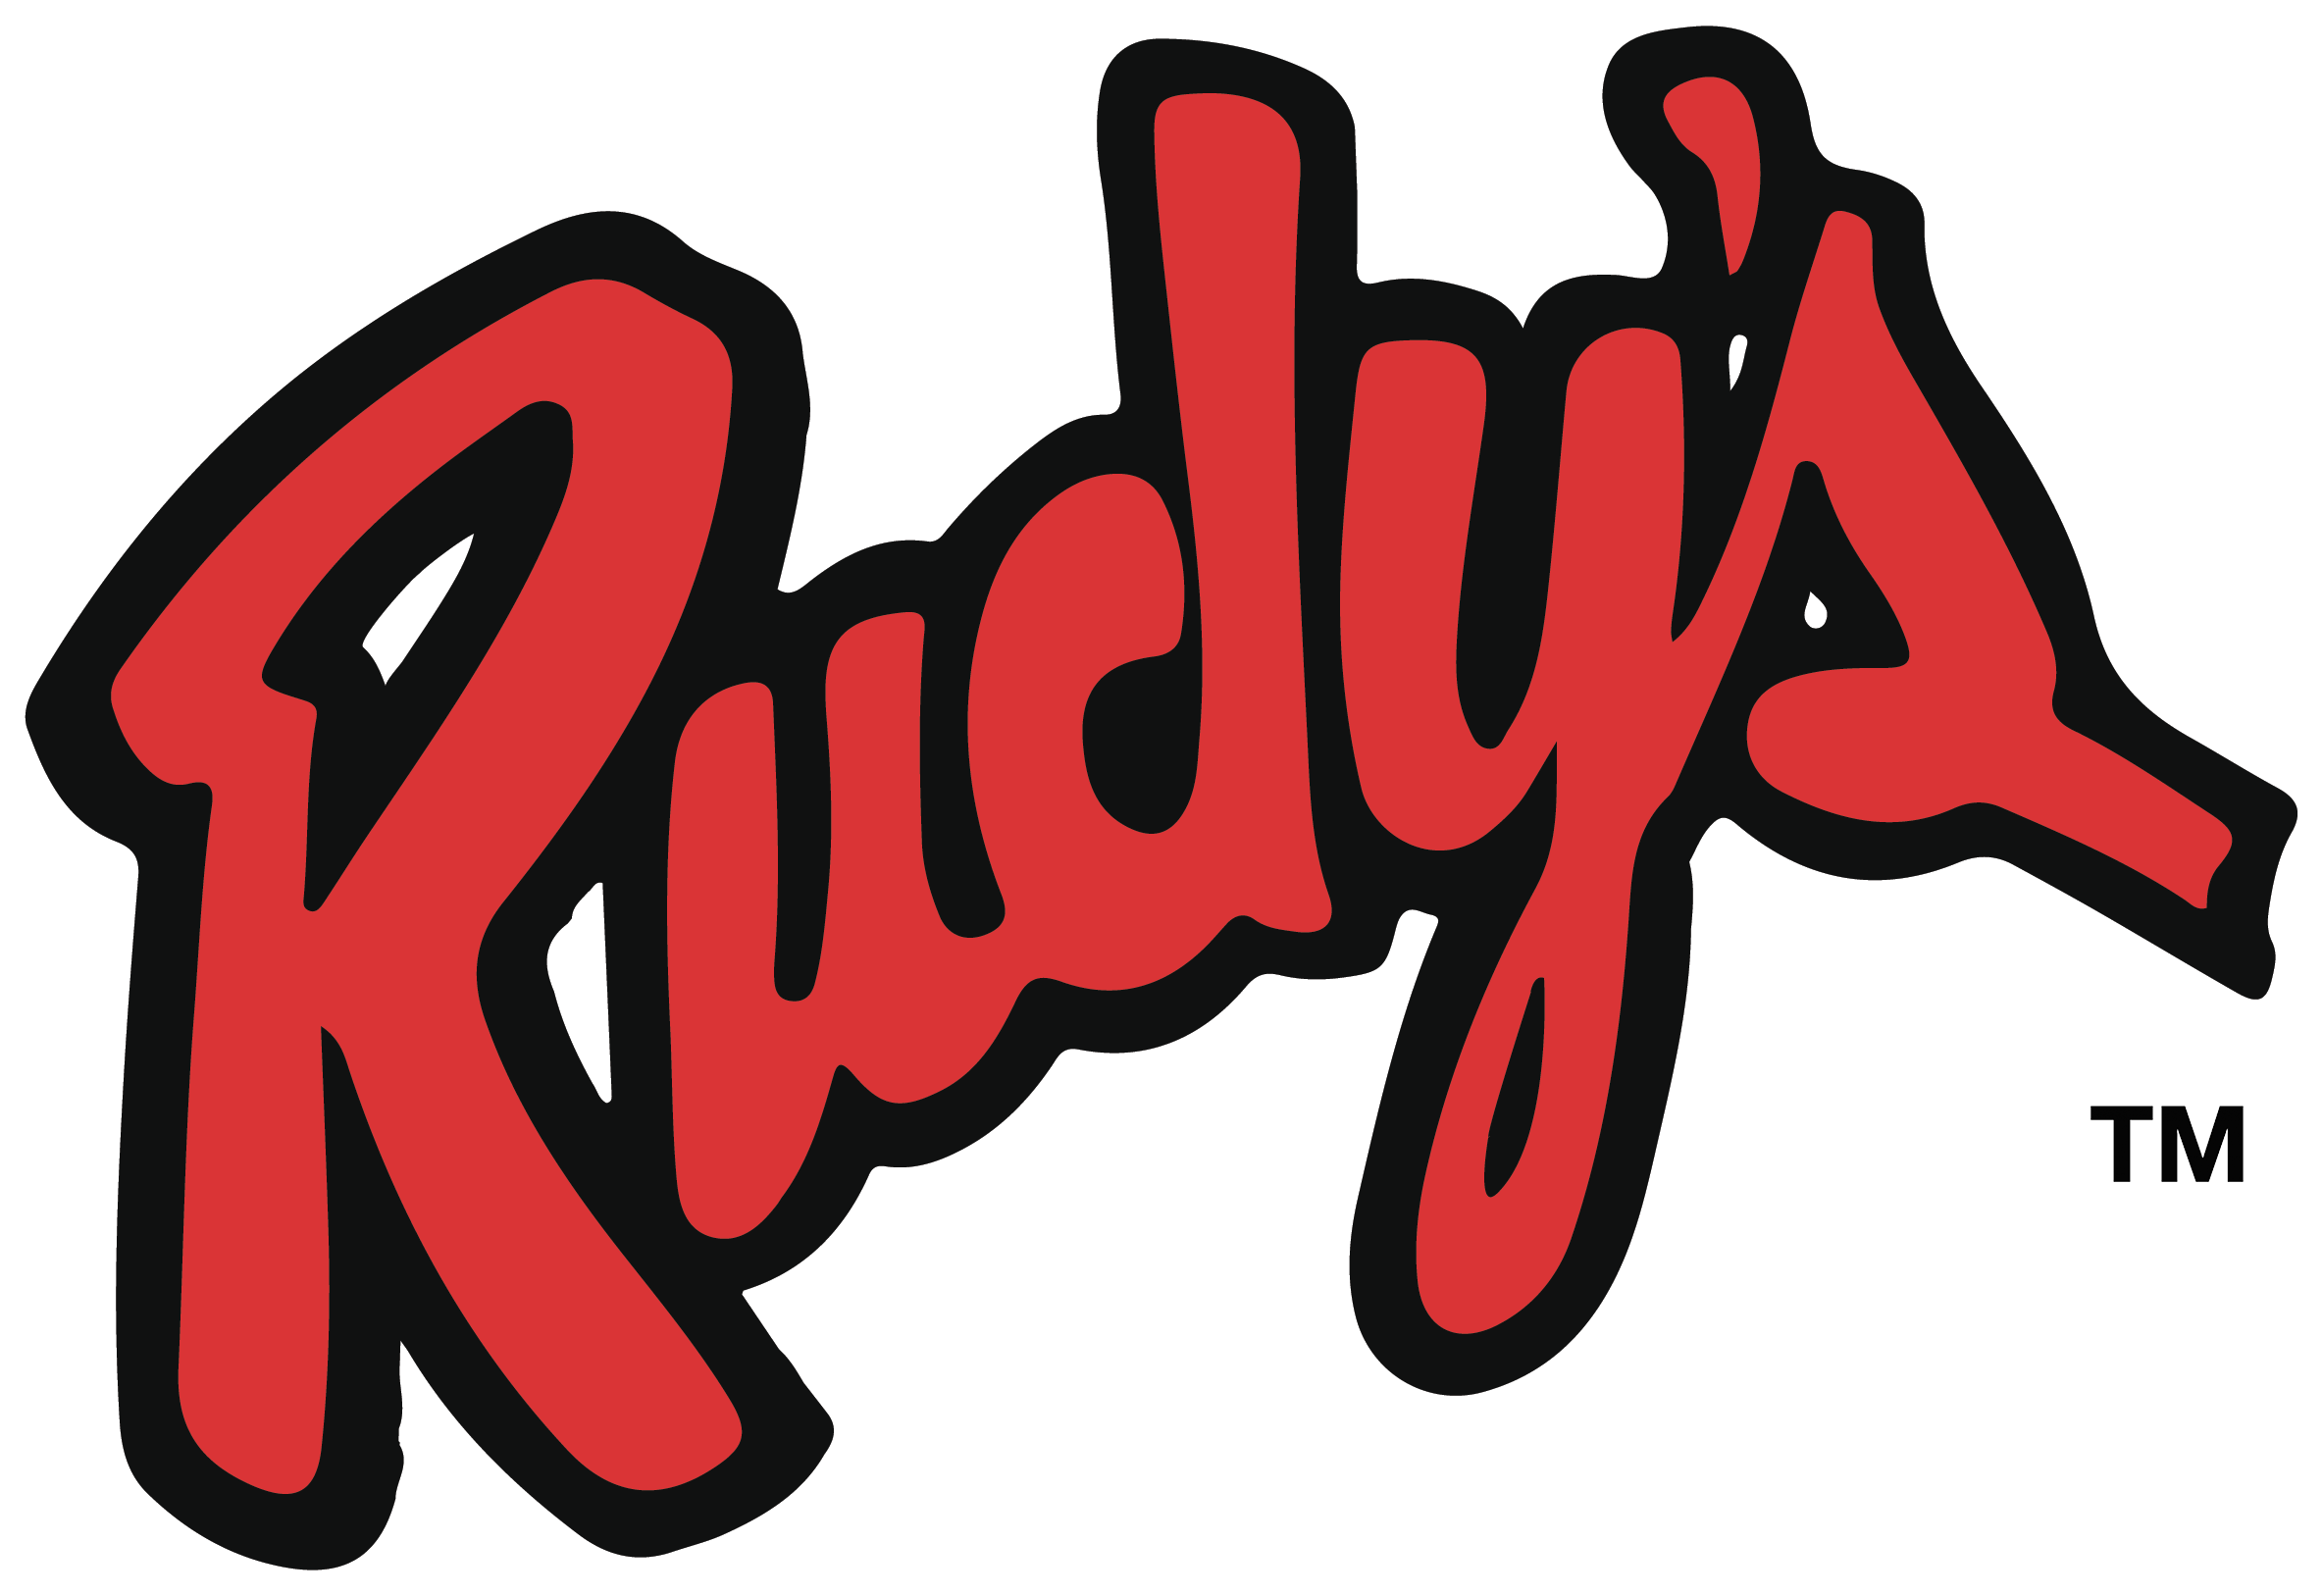 Rudy's